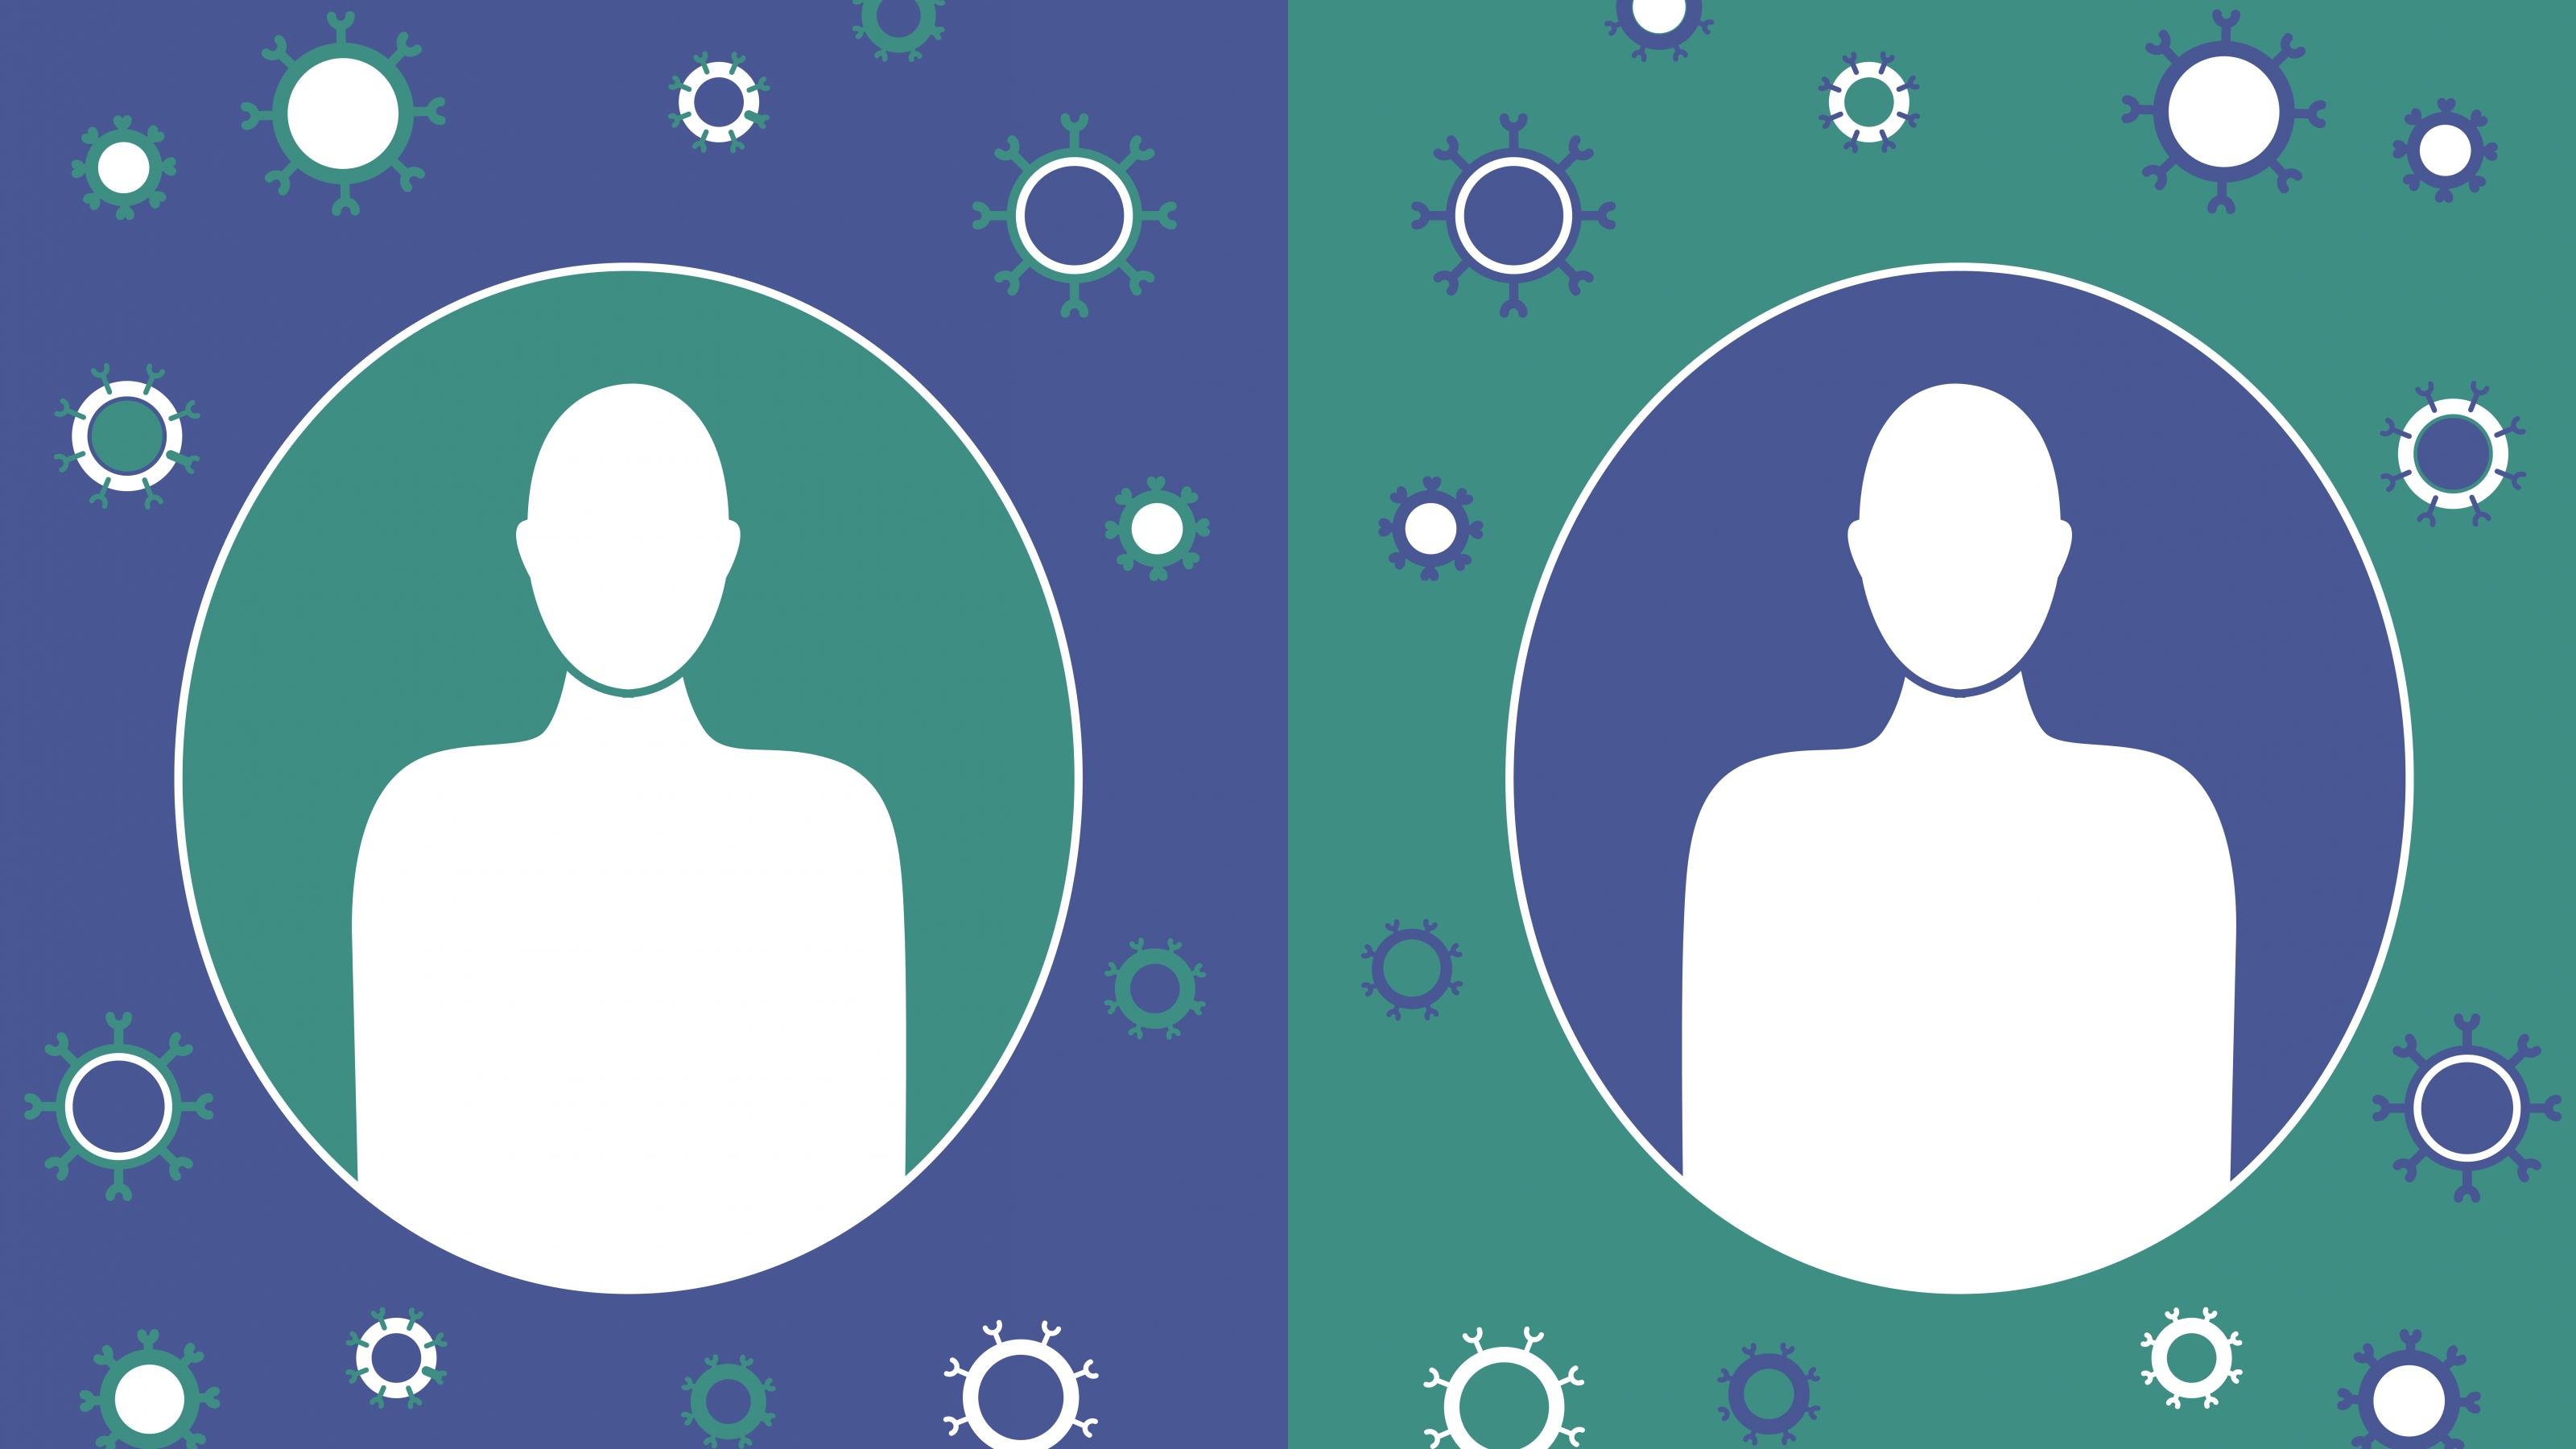 Das Bild ist in eine linke und eine rechte Hälfte geteilt. Links ist eine Zeichnung einer menschlichen Silhouette in einem türkisen Kreis zu sehen, um den herum stilisierte Krankheitserreger auf blauem Hintergrund  schweben. Rechts ist nochmal die gleiche Zeichnung mit vertauschten Farben zu sehen.